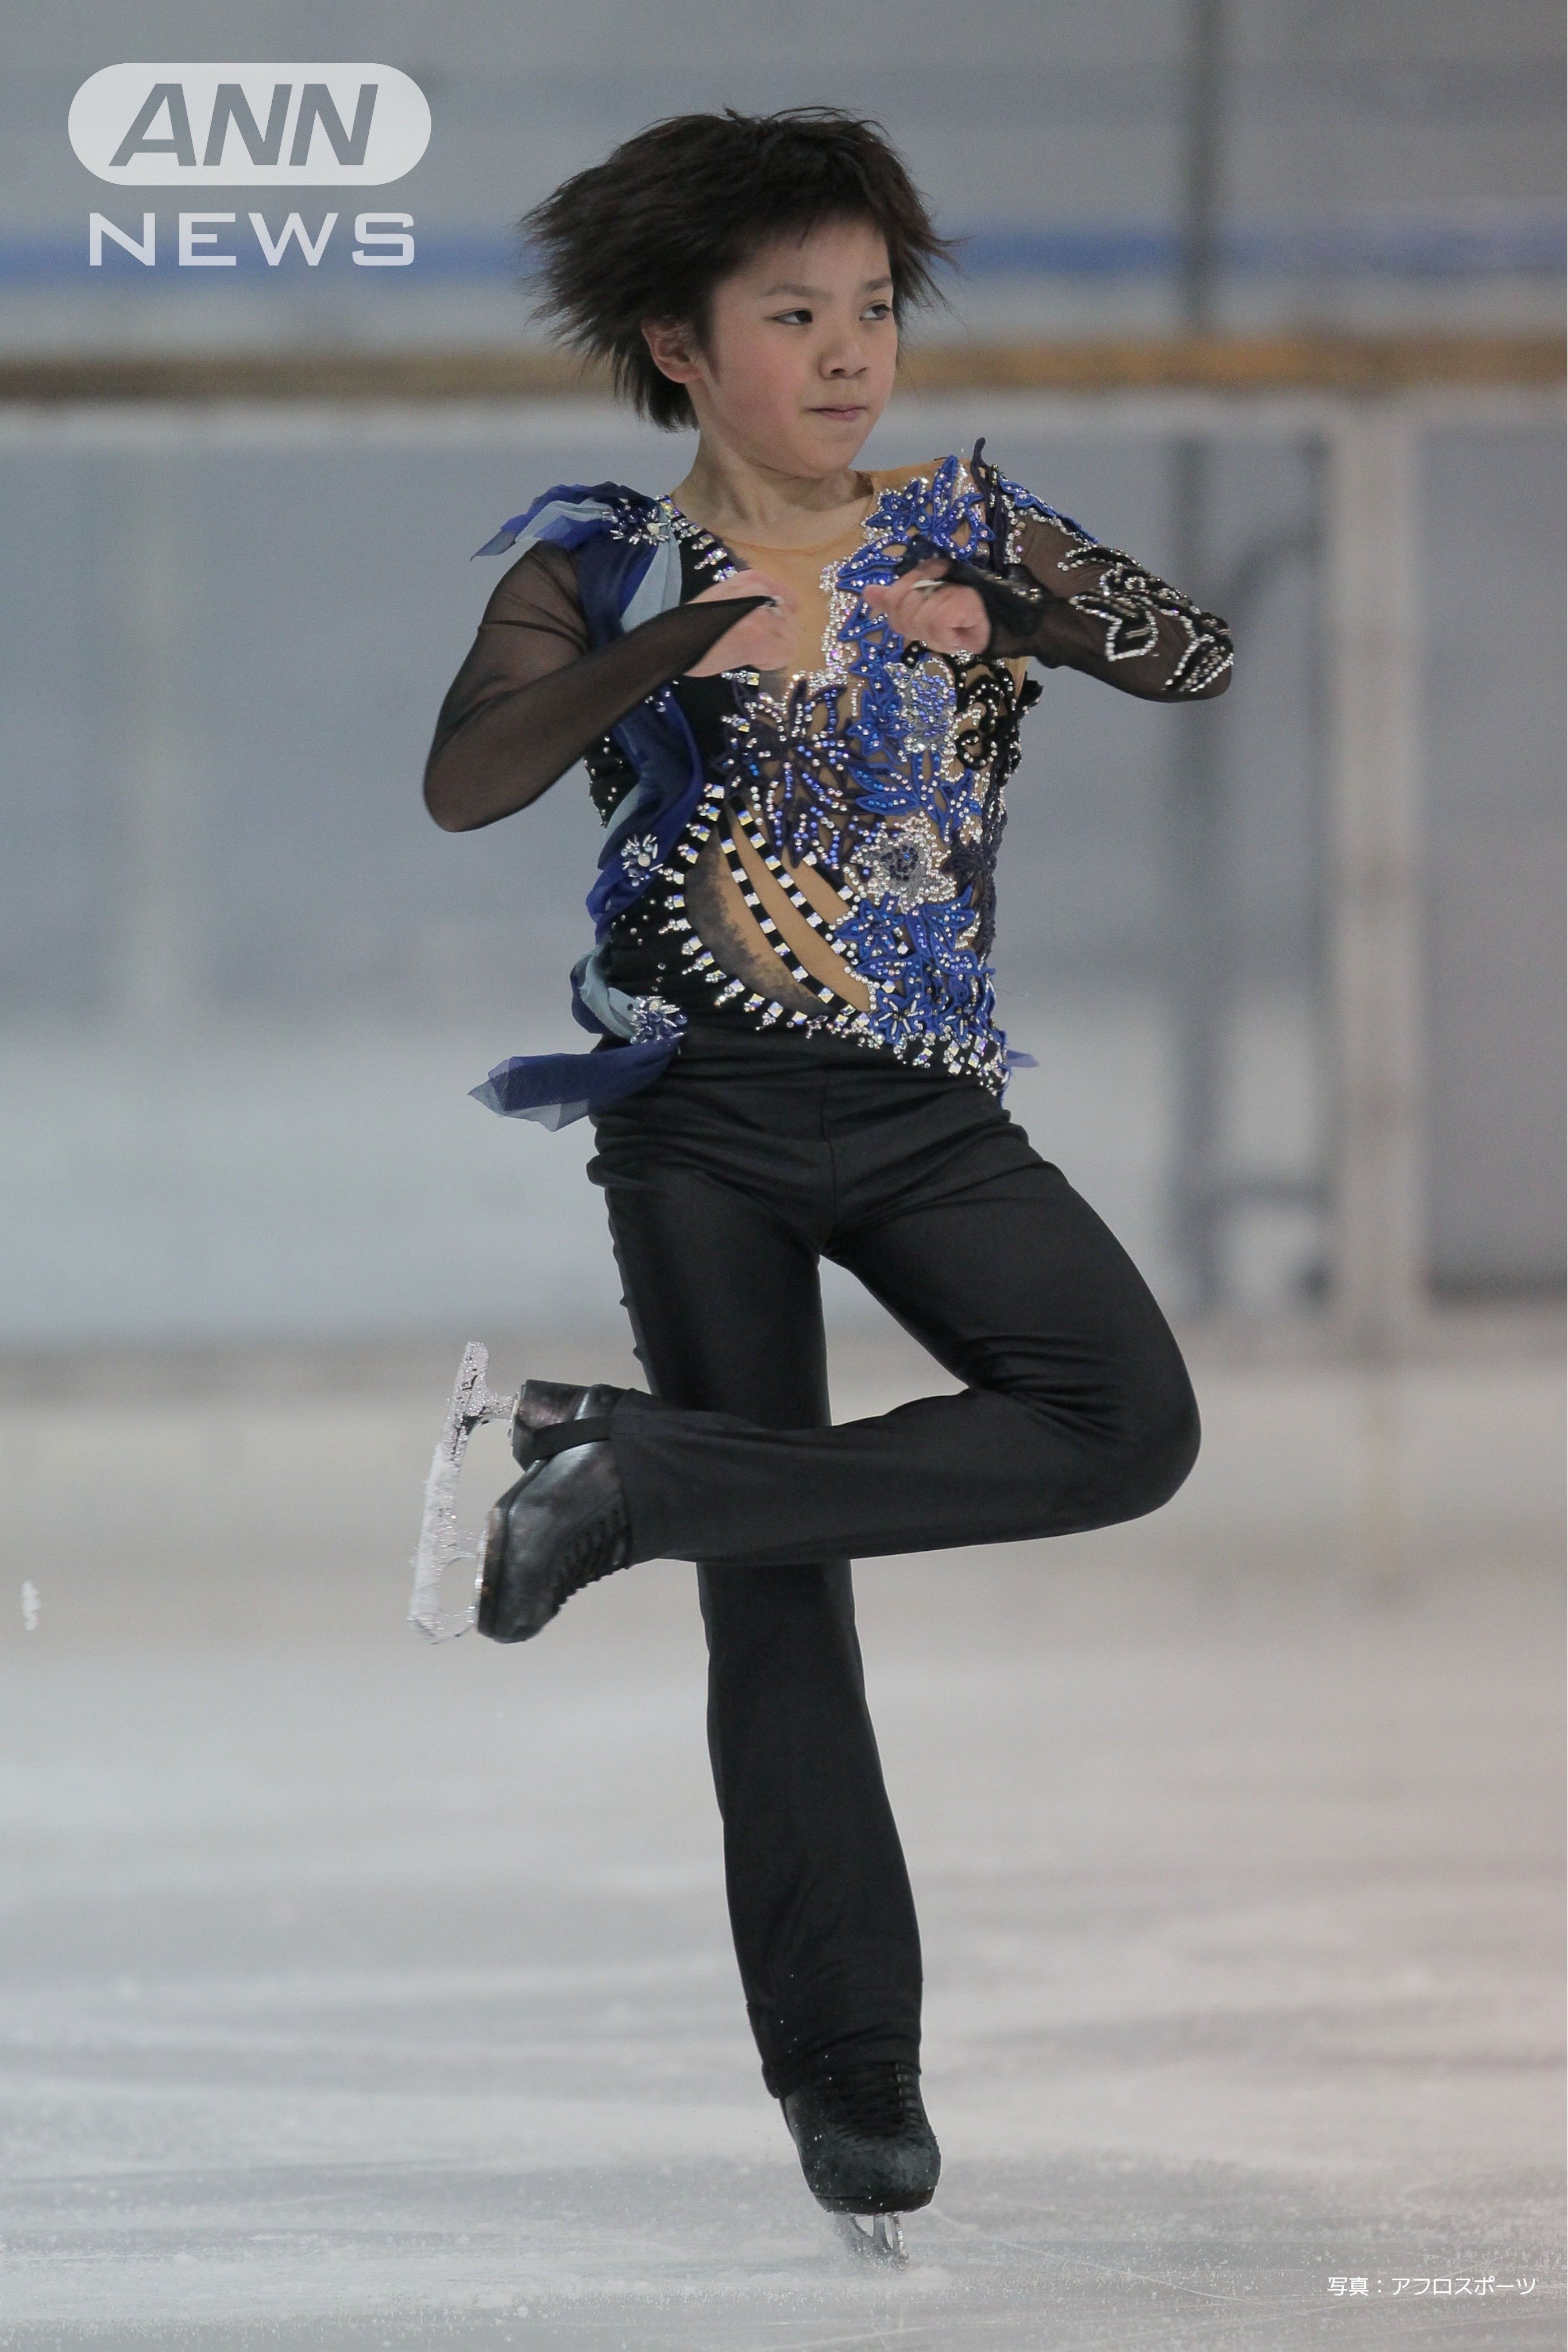 中部フィギュアスケート2011 ジュニア男子FS